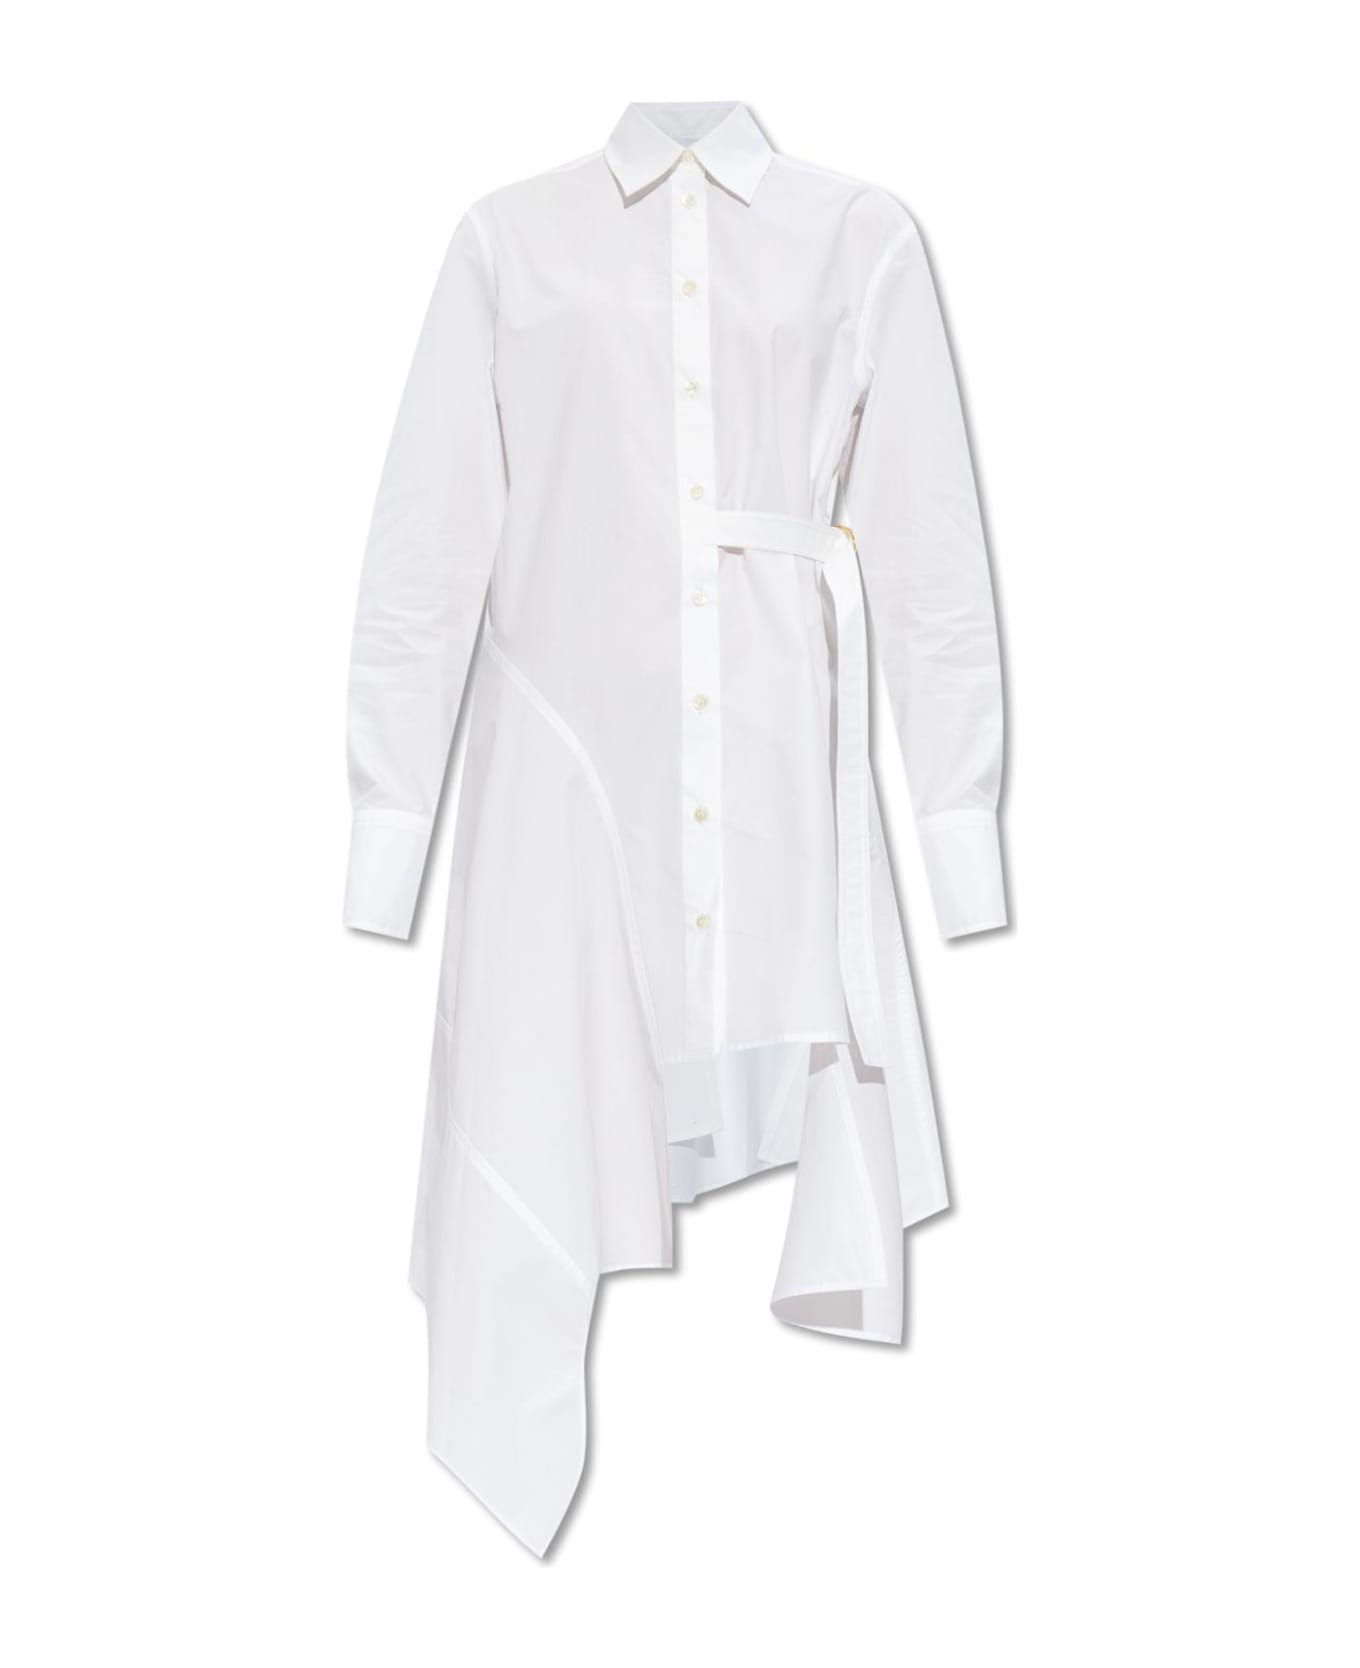 J.W. Anderson Shirt Dress - White